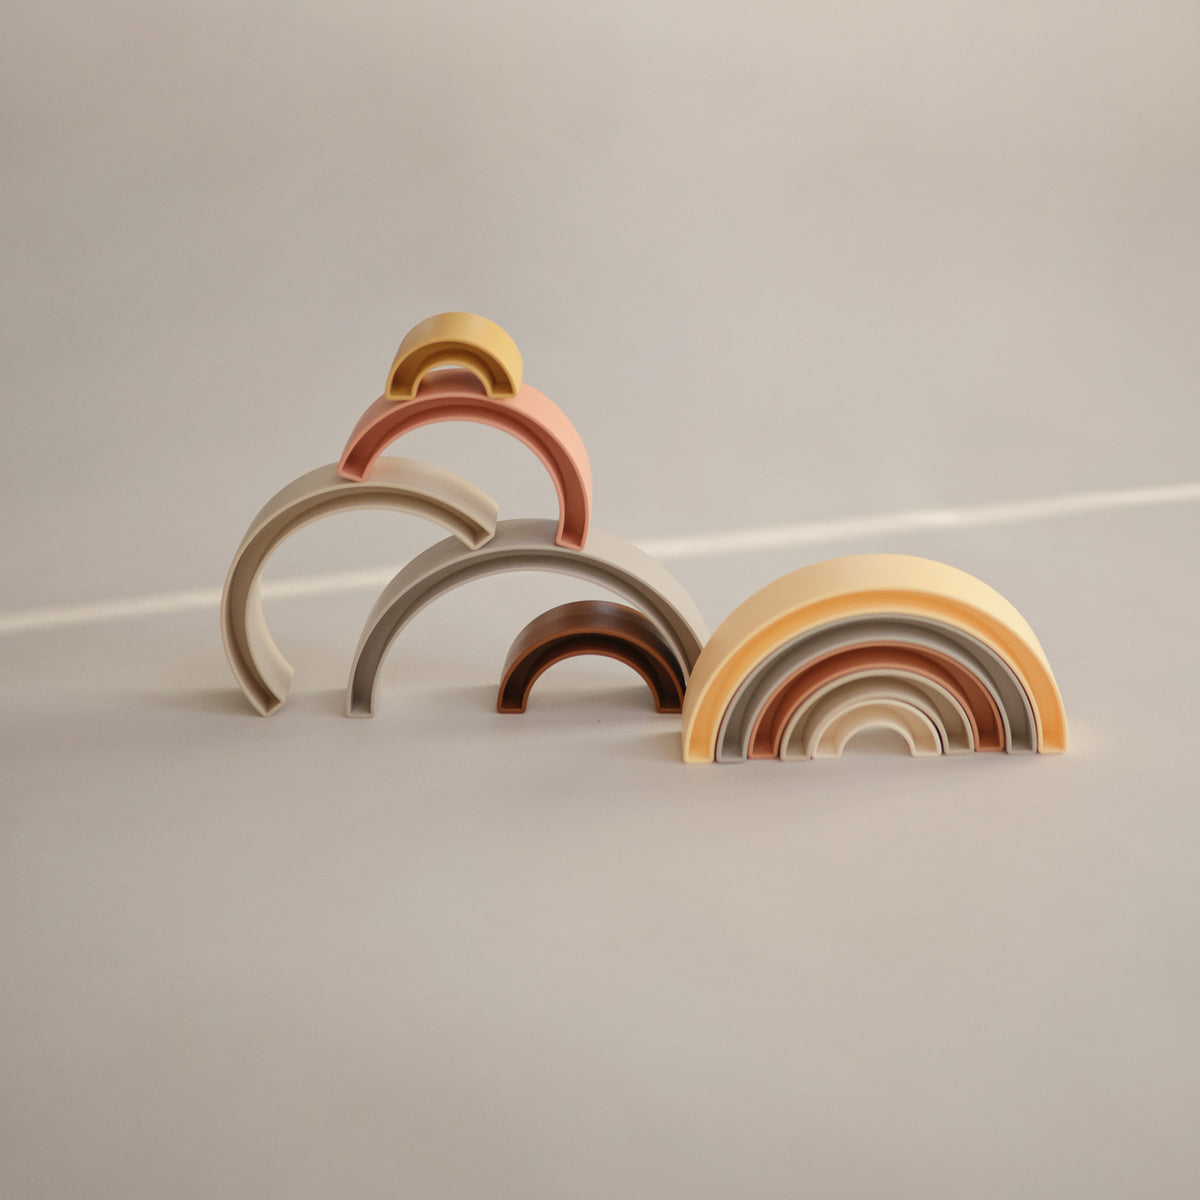 Mushie Rainbow Stacker Toy